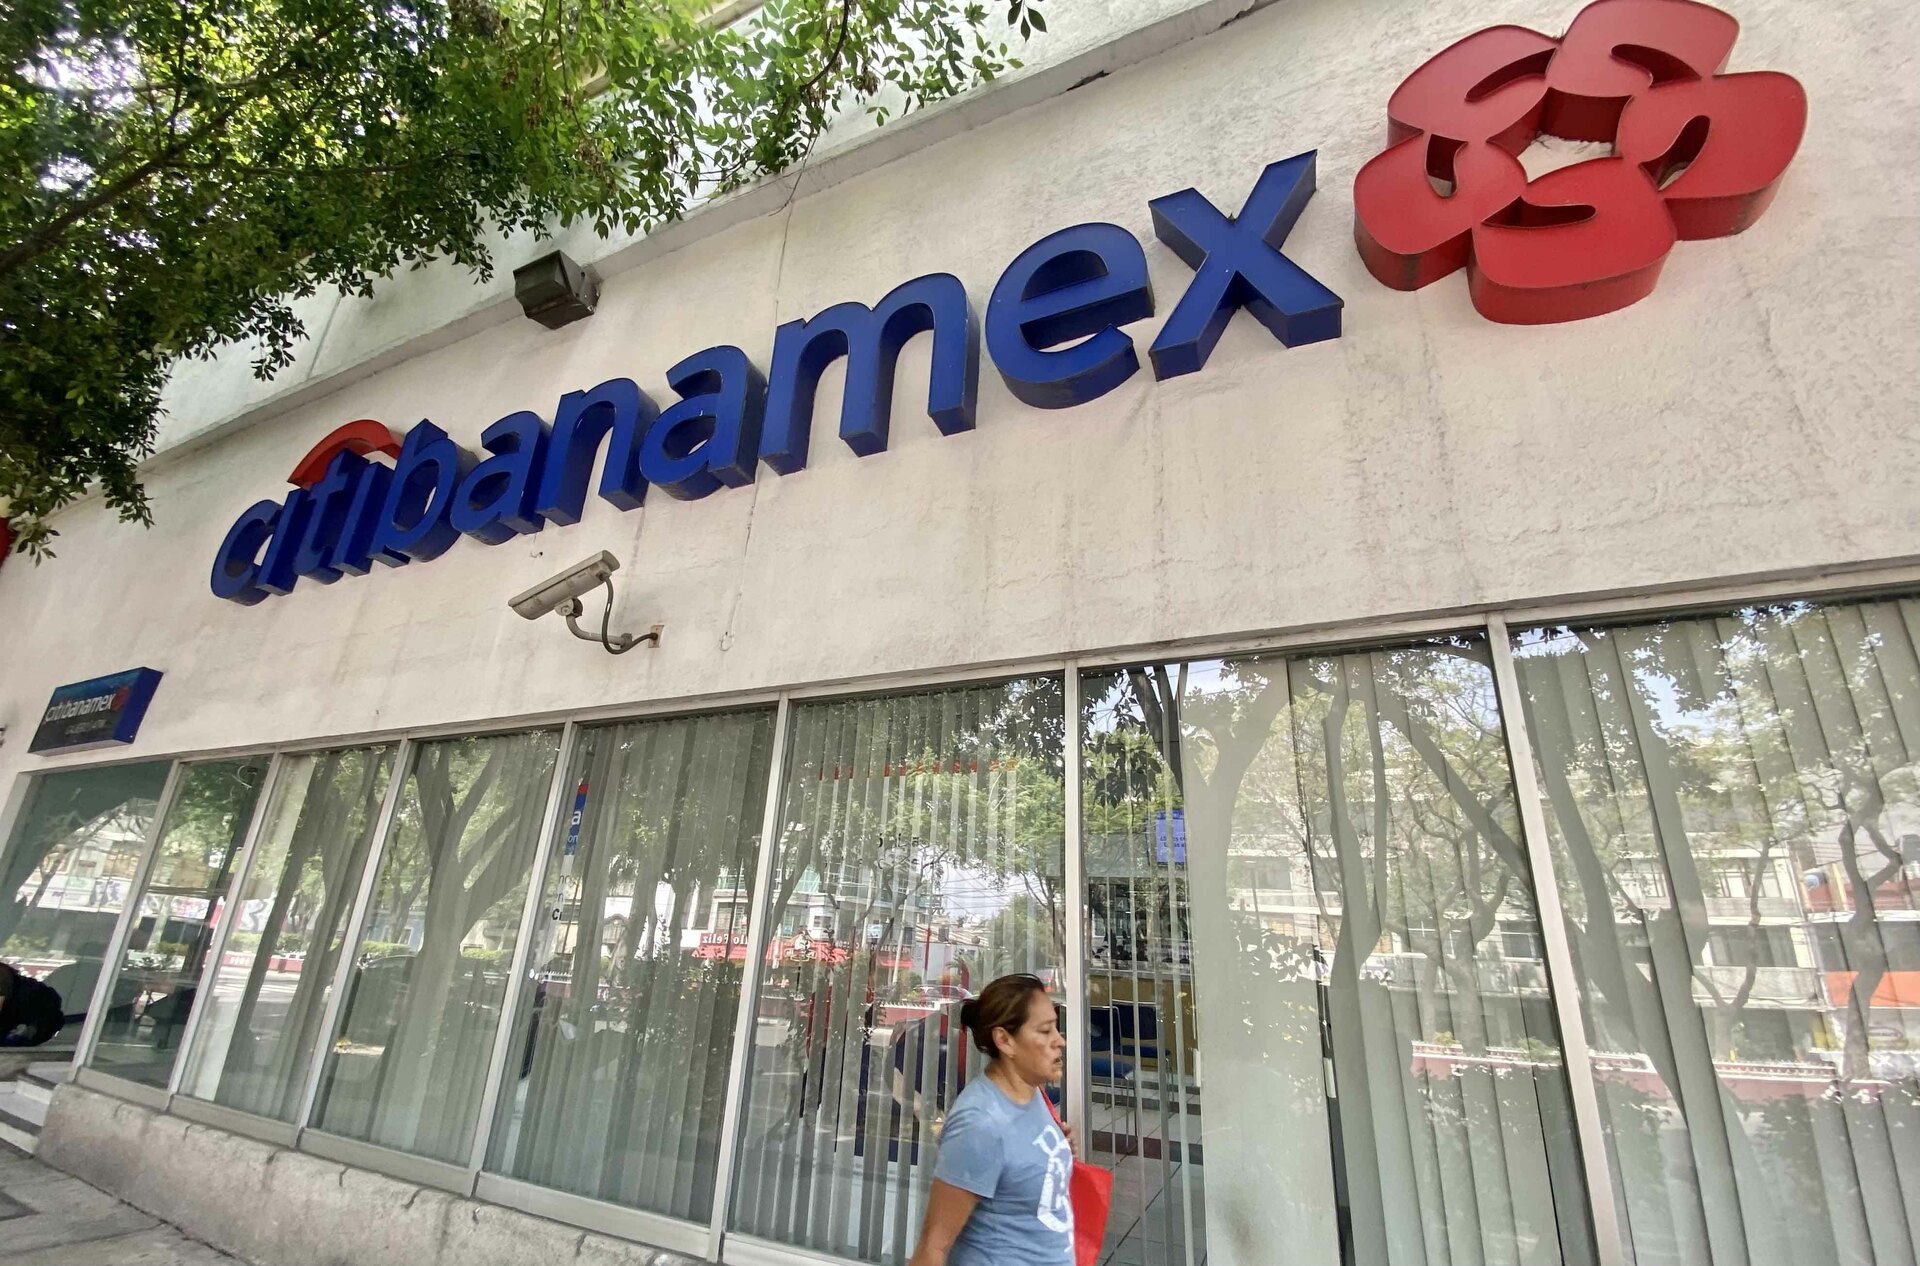 Citibanamex: AMLO quer empresários mexicanos, mas os EUA também